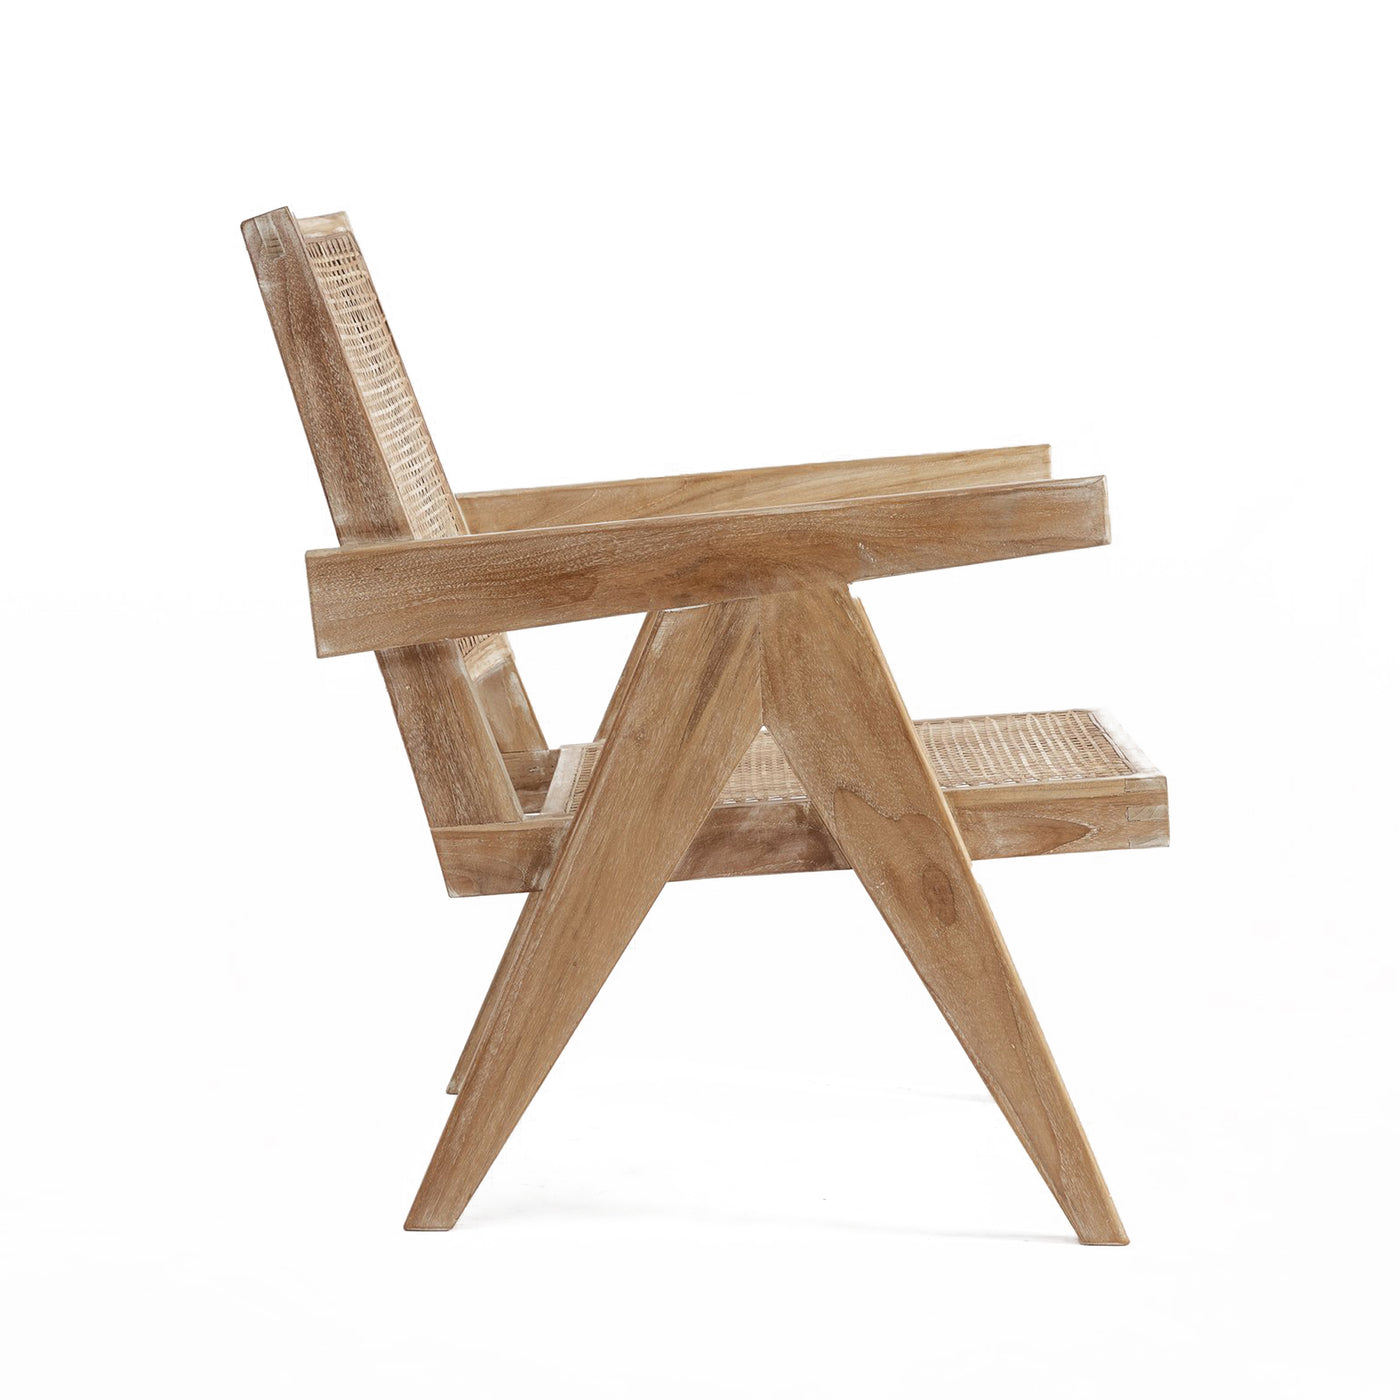 Pierre Jaenneret, židle podle pierre jeanneret, design 50. let, minimaistická židle, Srelle, Židle do minimalistických interiérů, luxusní židle, Pierre židle, 